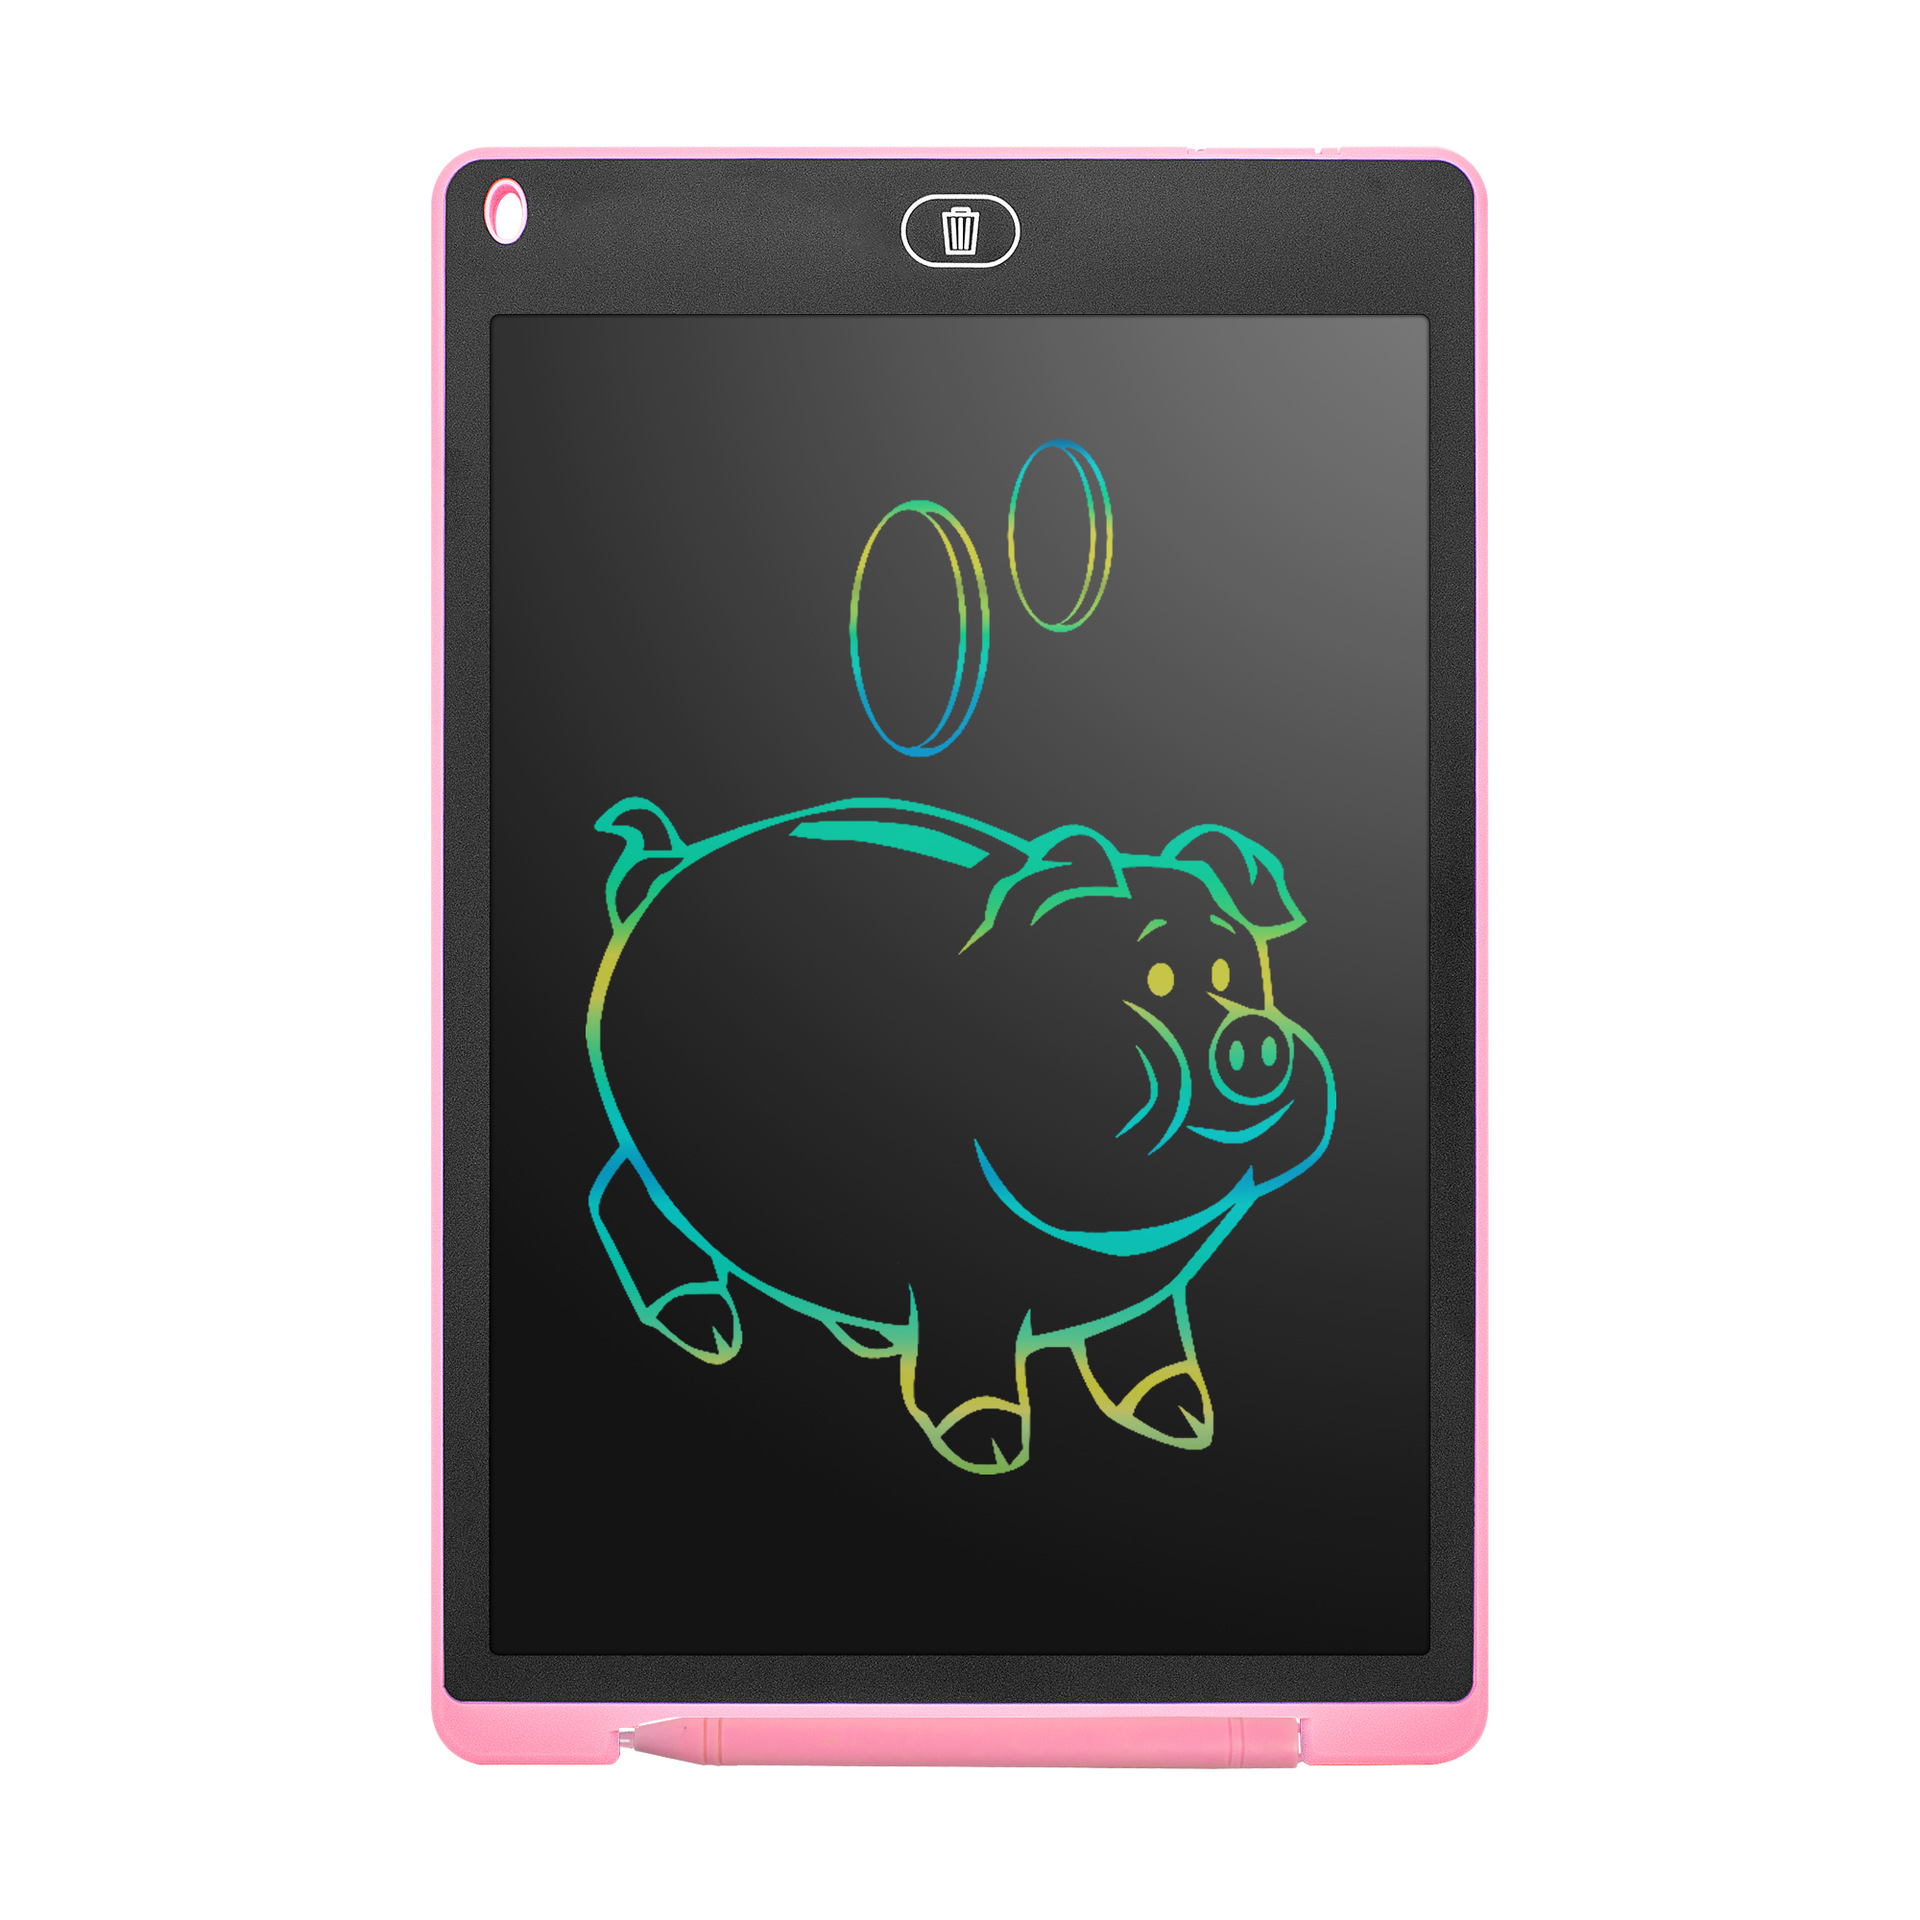 Bảng viết vẽ thông minh màn hình LED tự động xóa dành cho bé